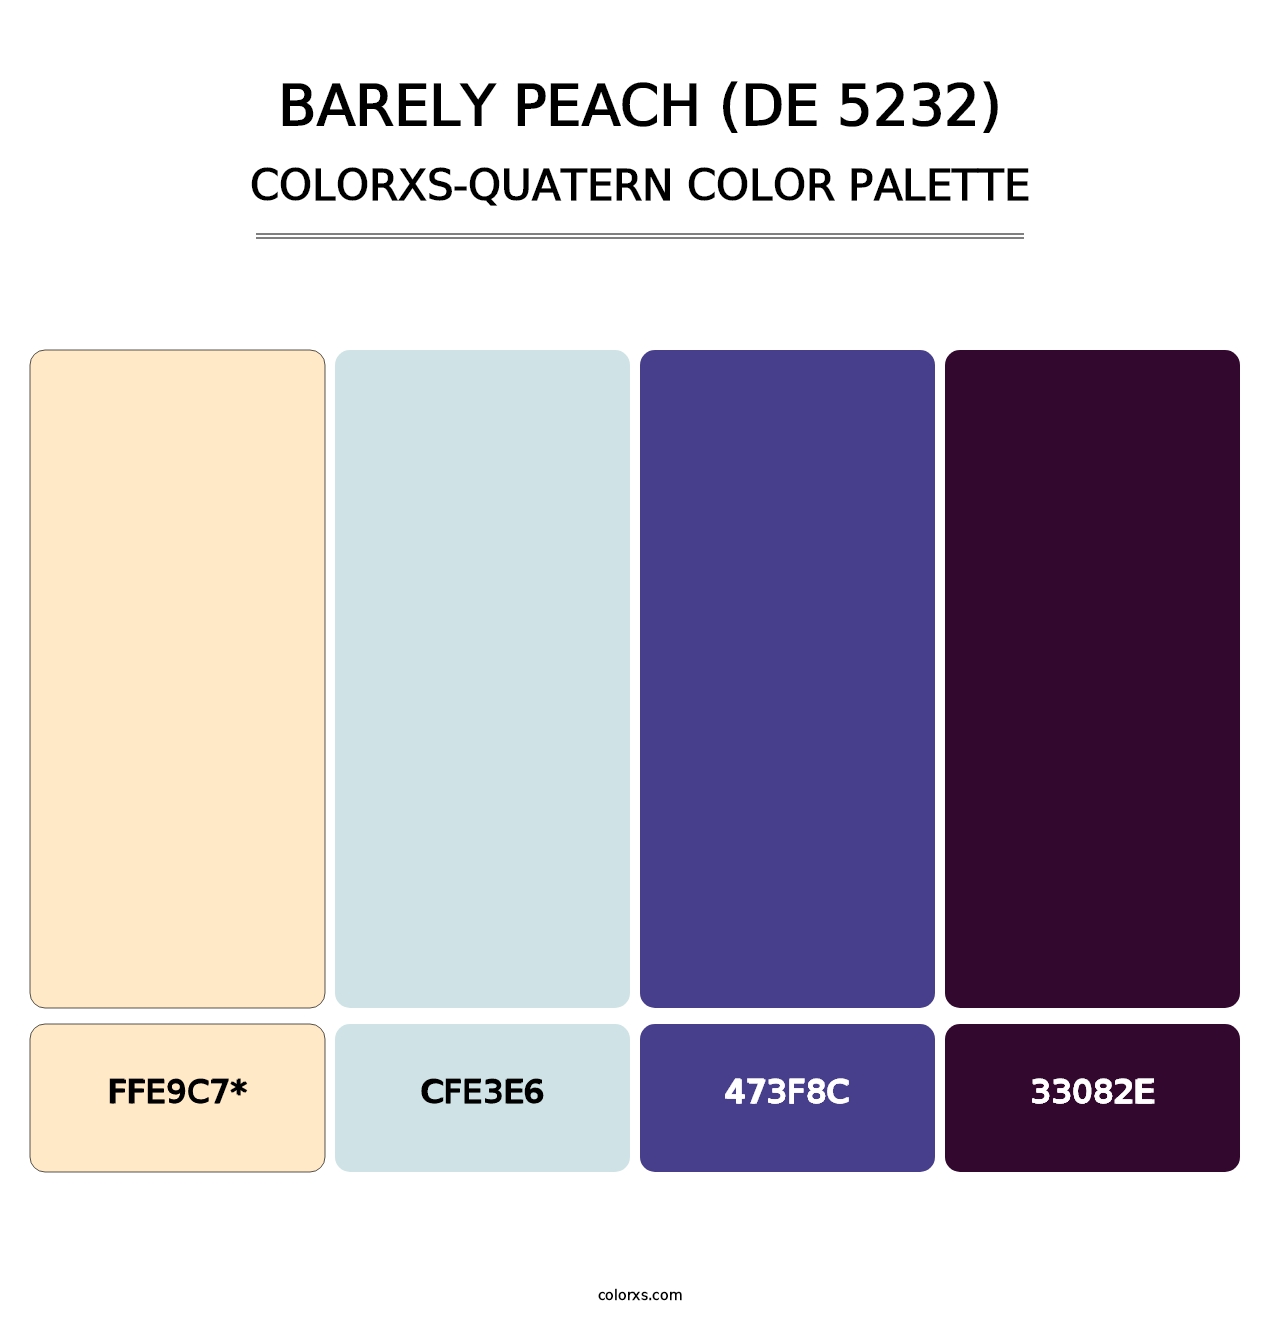 Barely Peach (DE 5232) - Colorxs Quatern Palette